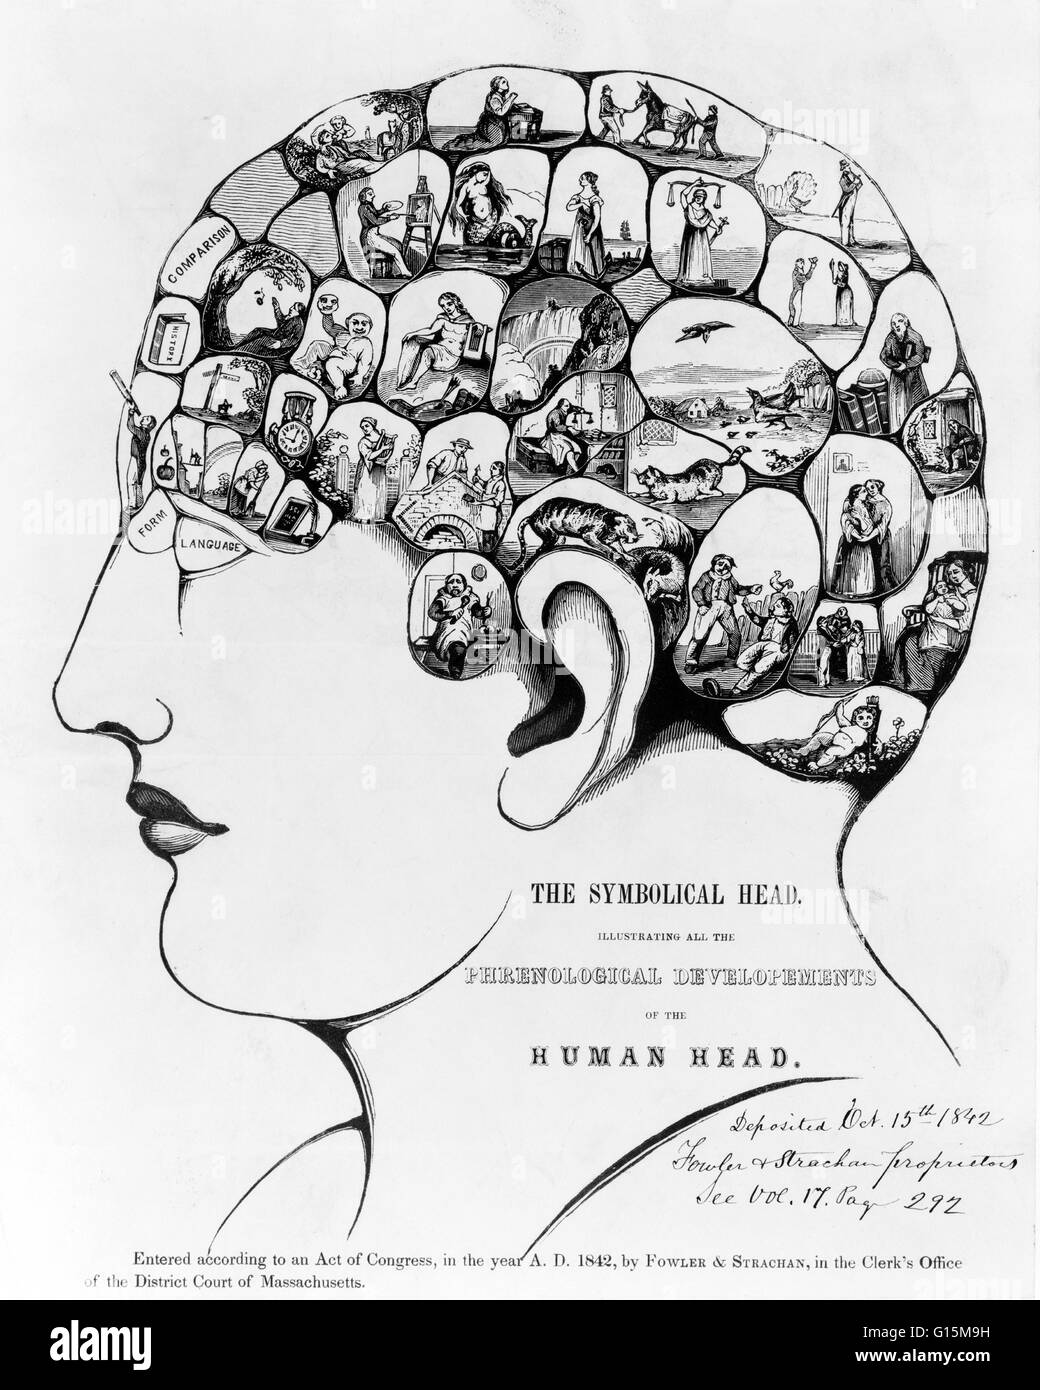 Der symbolische Kopf, illustrieren die phrenologische Entwicklungen des menschlichen Kopfes. Phrenologie ist die Wissenschaft, die die Beziehungen zwischen den Charakter einer Person und die Morphologie des Schädels untersucht. Es ist eine sehr alte Gegenstand der Studie. Die erste Stockfoto